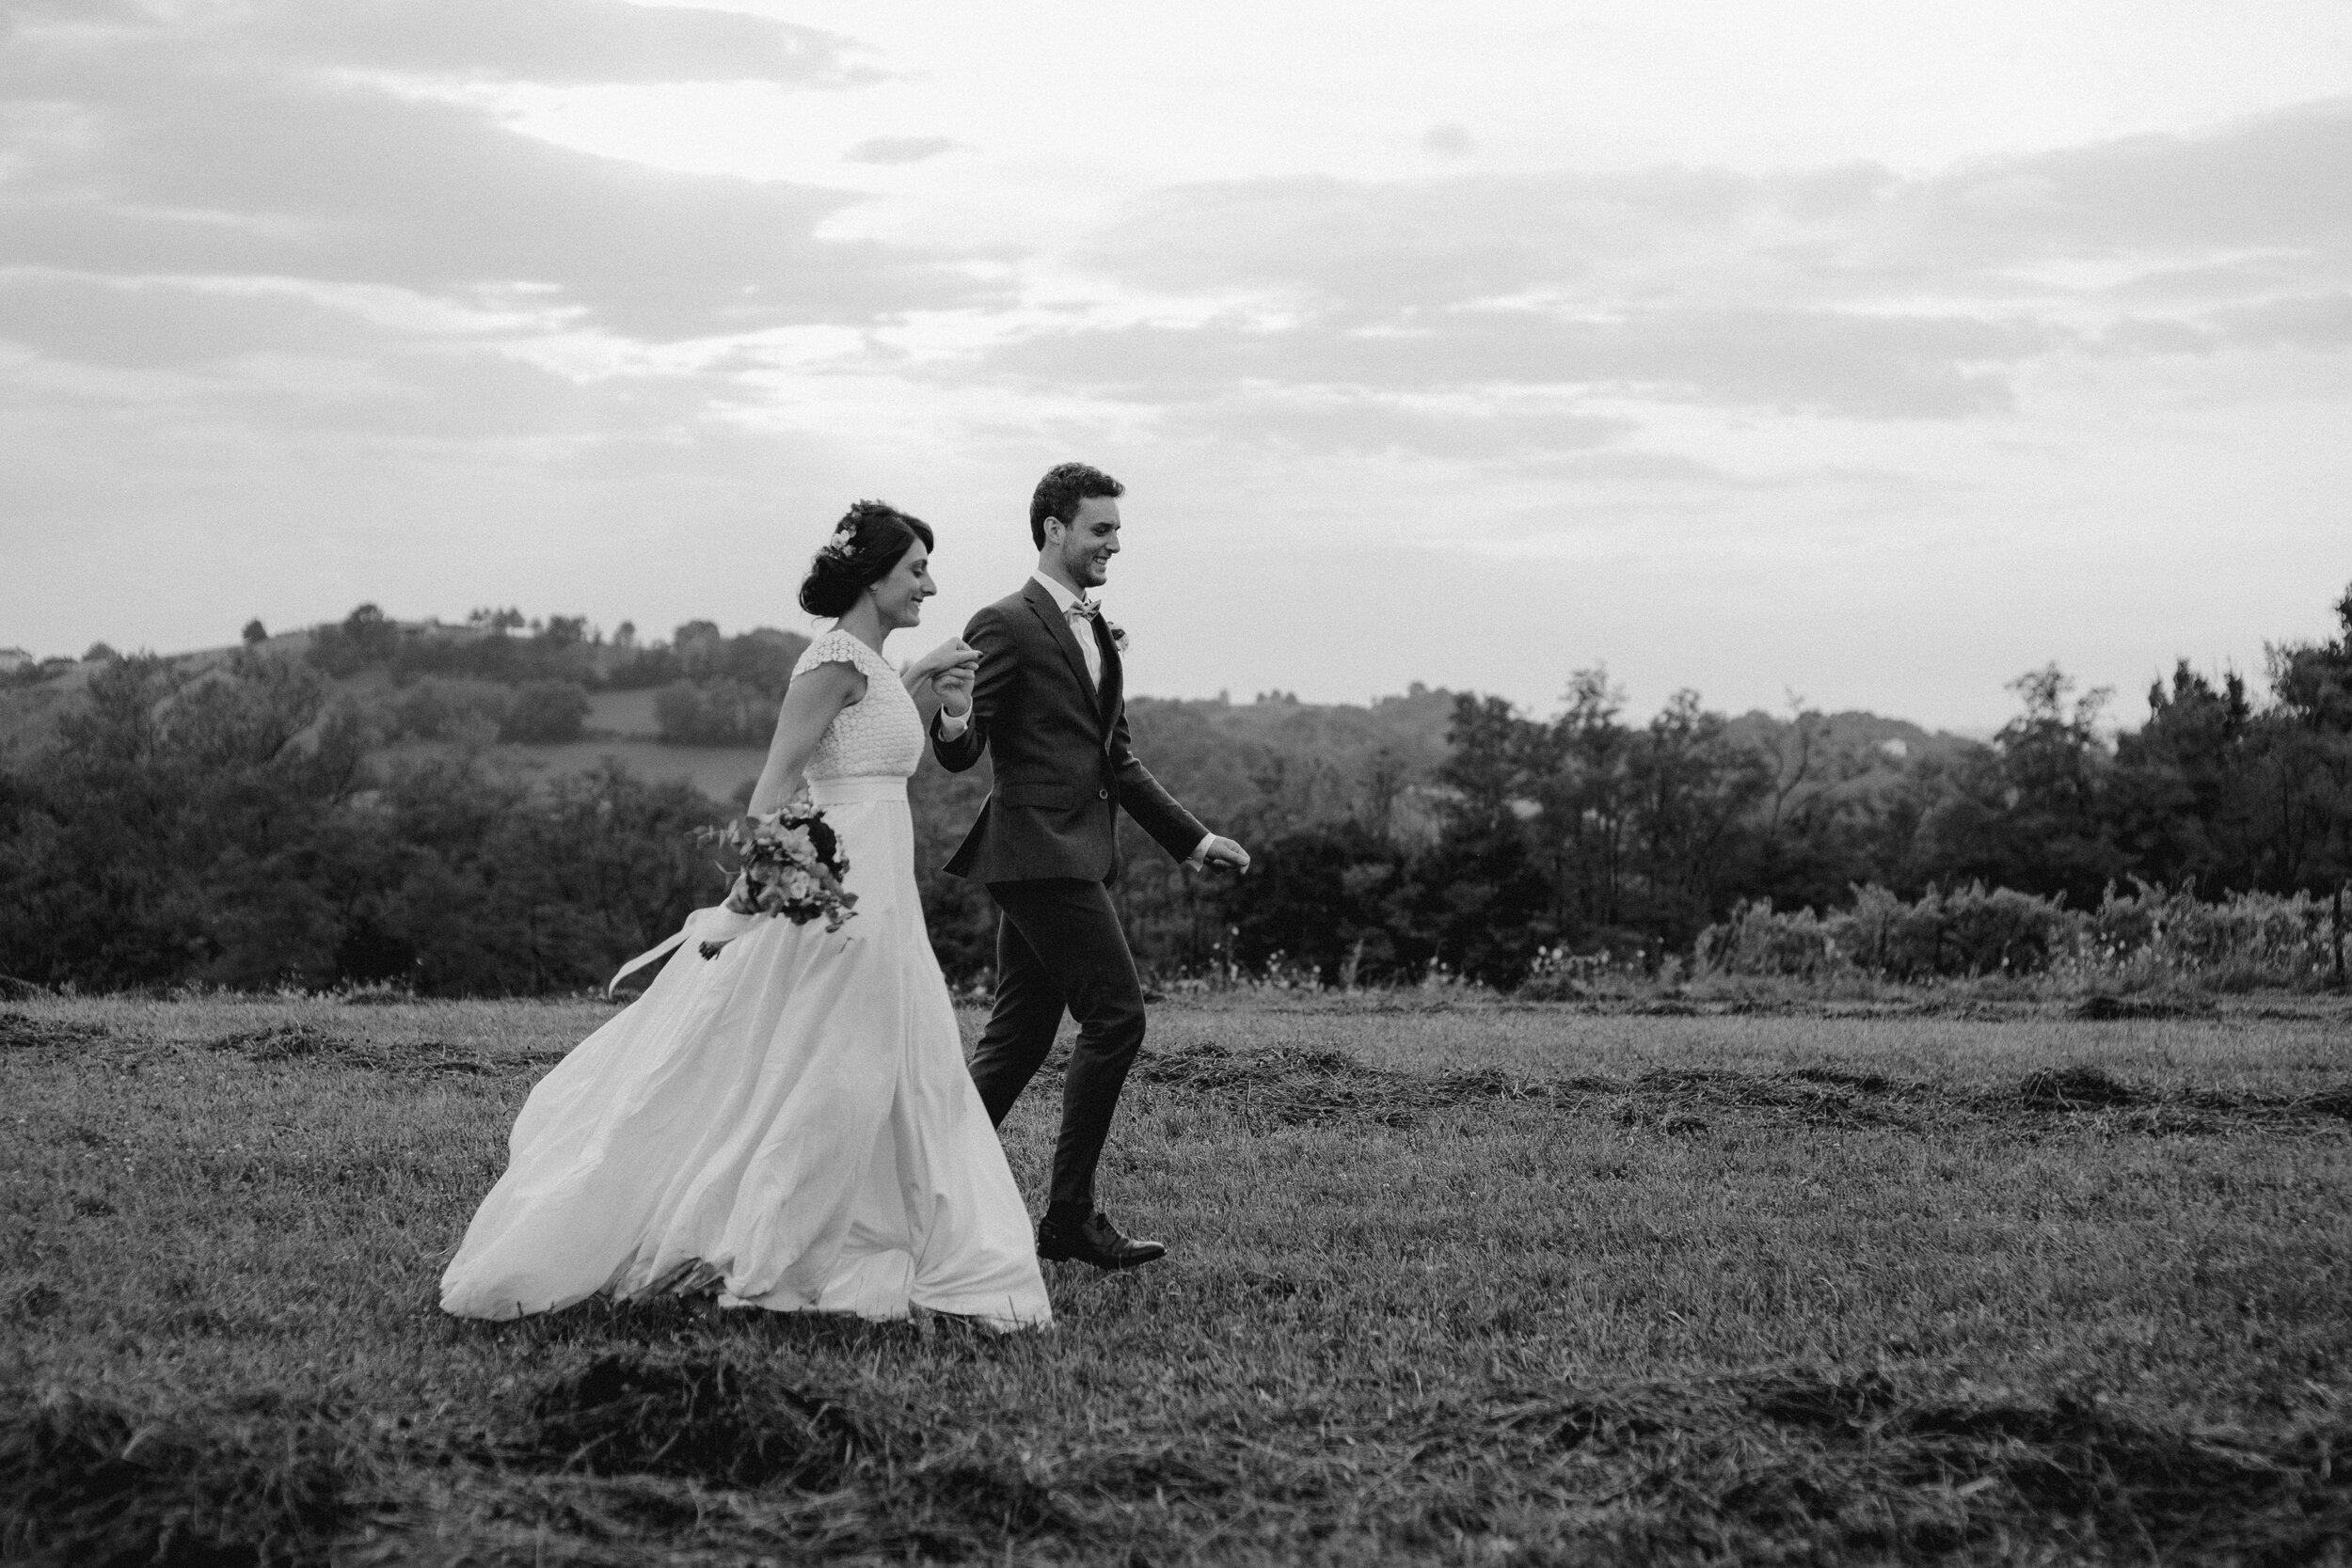 074 - Matrimonio in provincia di Cuneo - Miriam Callegari Fotografa.JPG